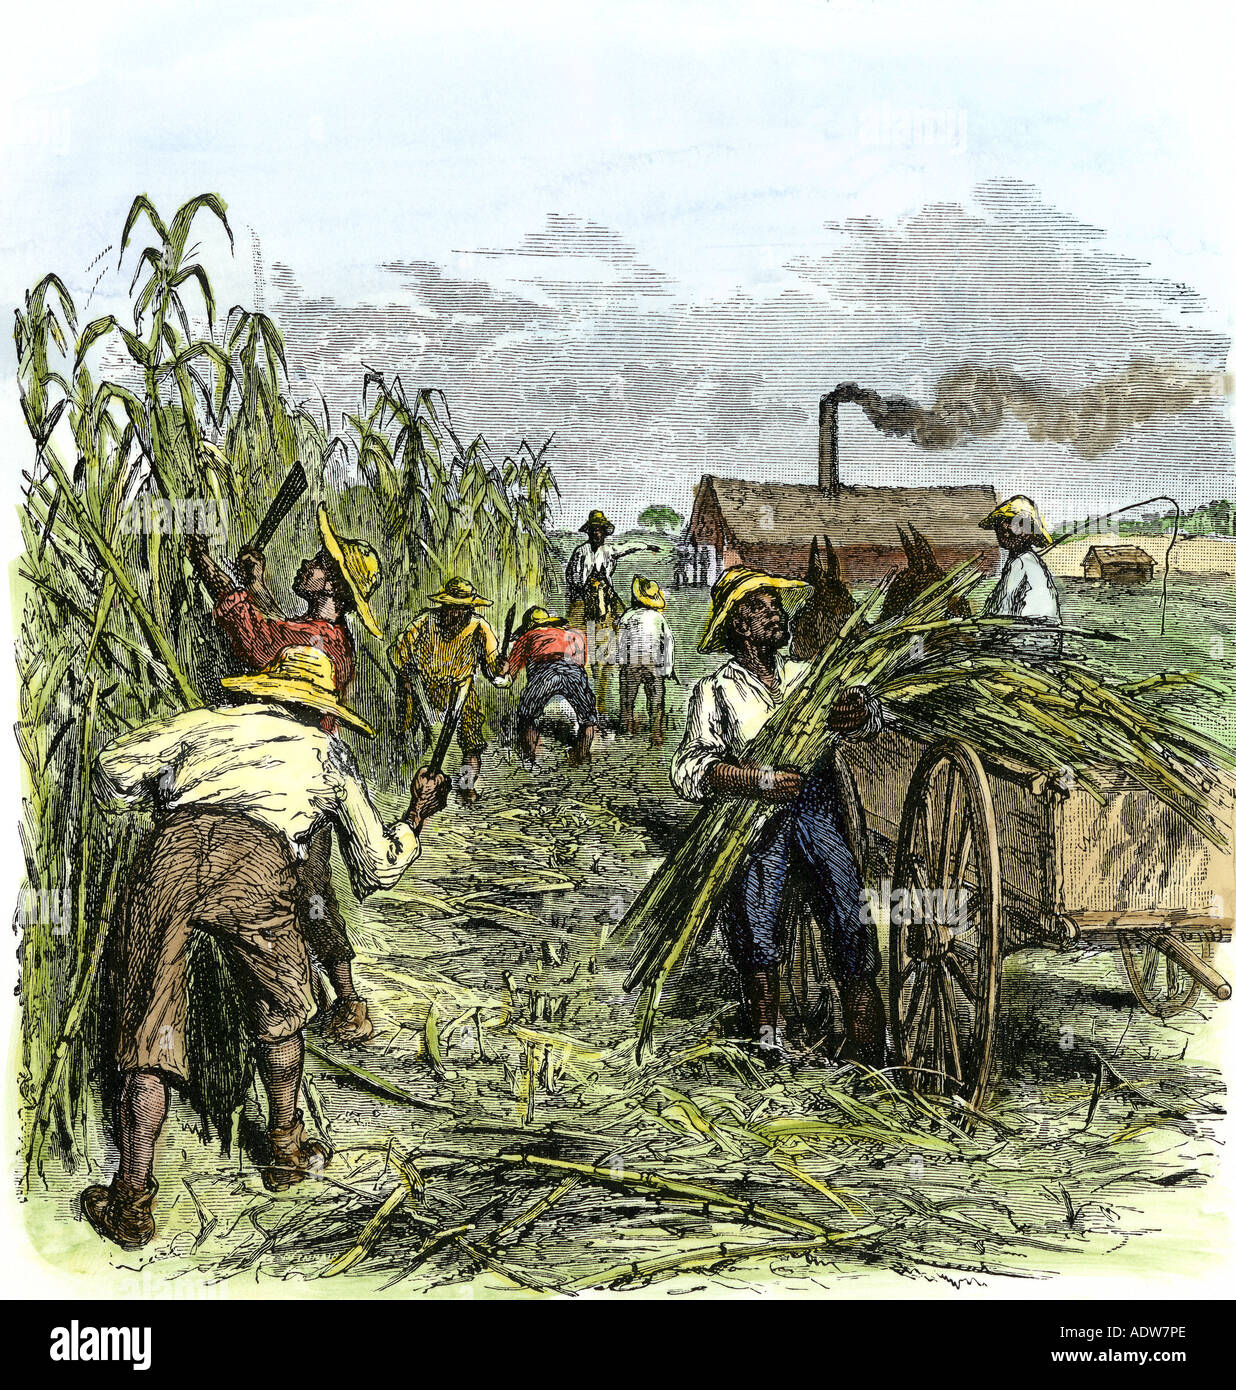 Esclaves noirs de la canne à sucre la récolte sur une plantation dans le sud des États-Unis des années 1800. À la main, gravure sur bois Banque D'Images